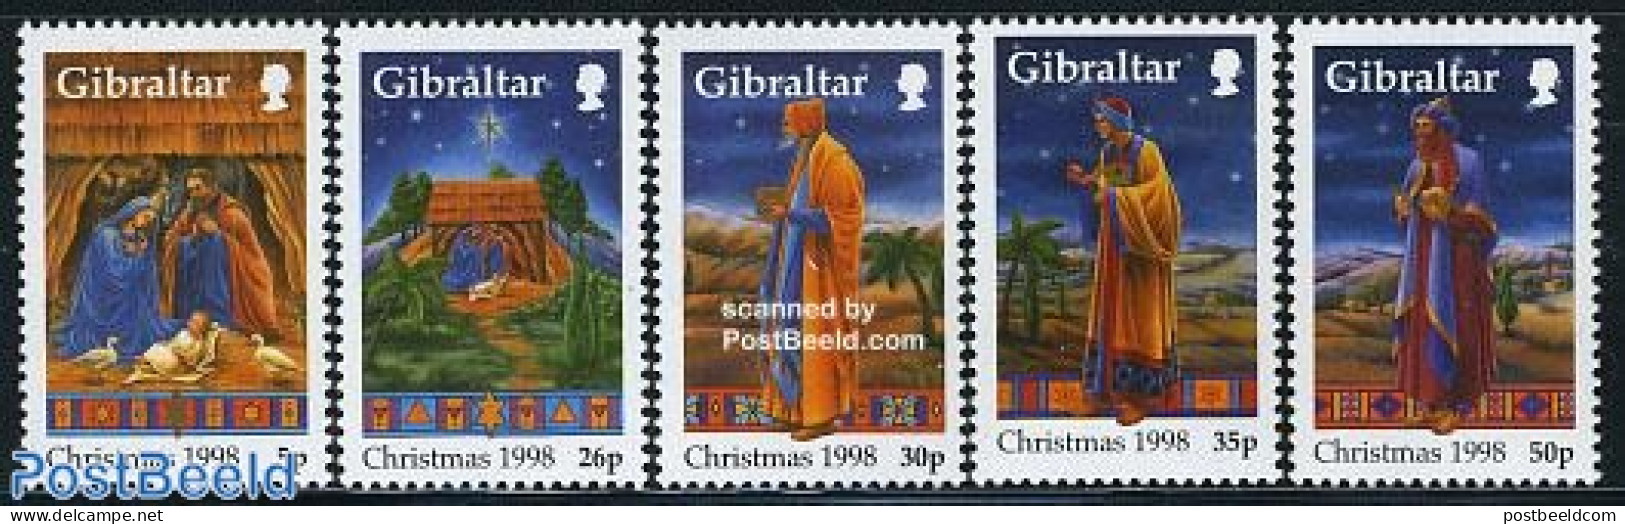 Gibraltar 1998 Christmas 5v, Mint NH, Religion - Christmas - Christmas